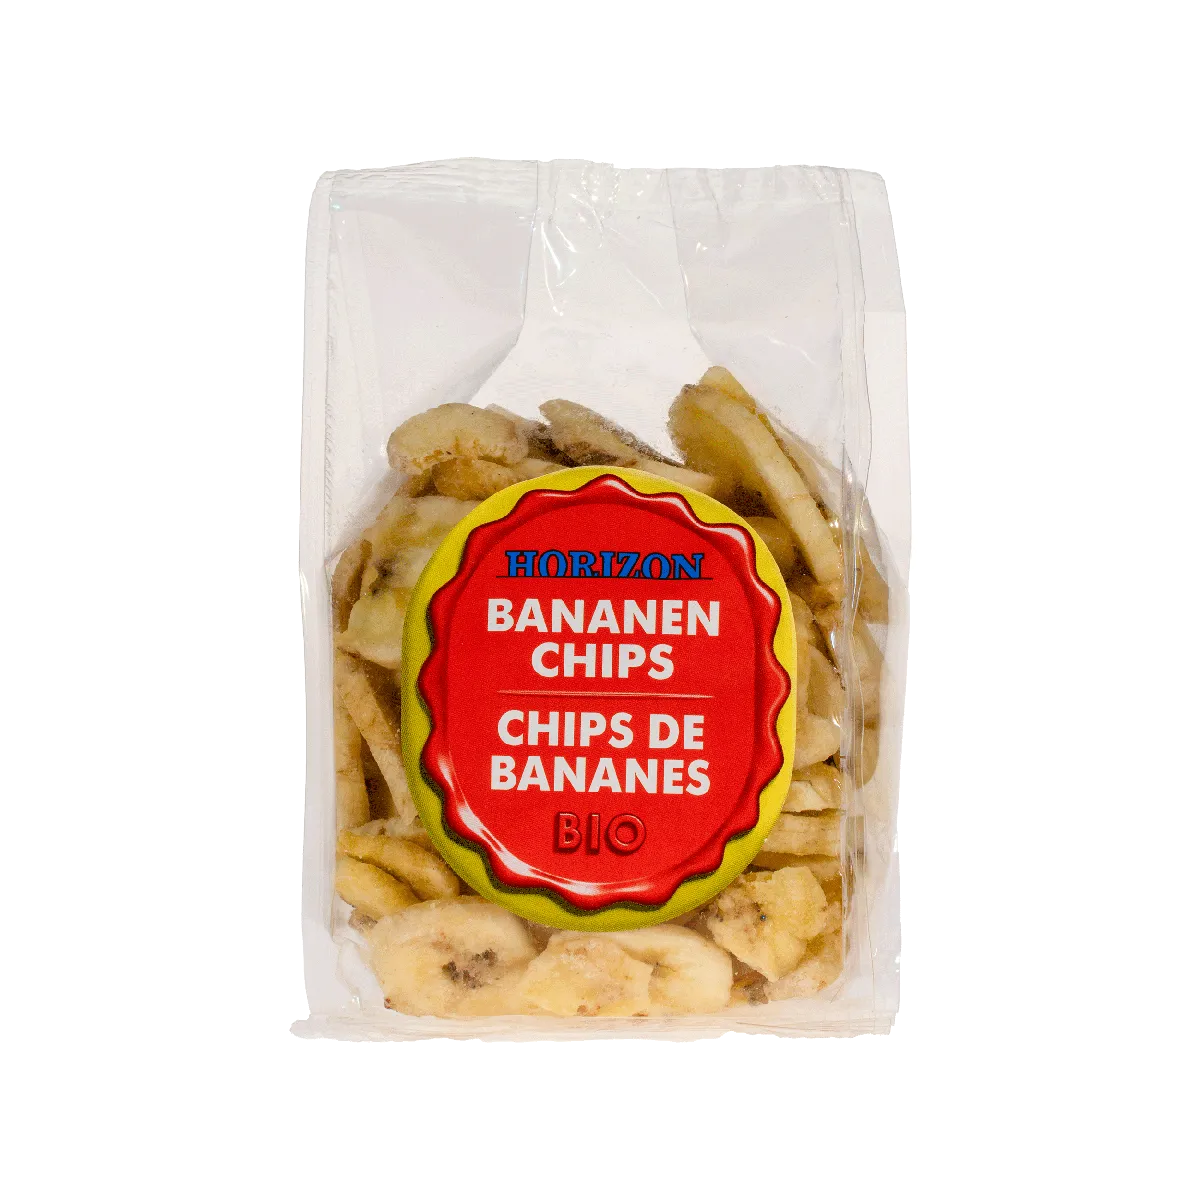 Horizon Bananen chips bio 125g